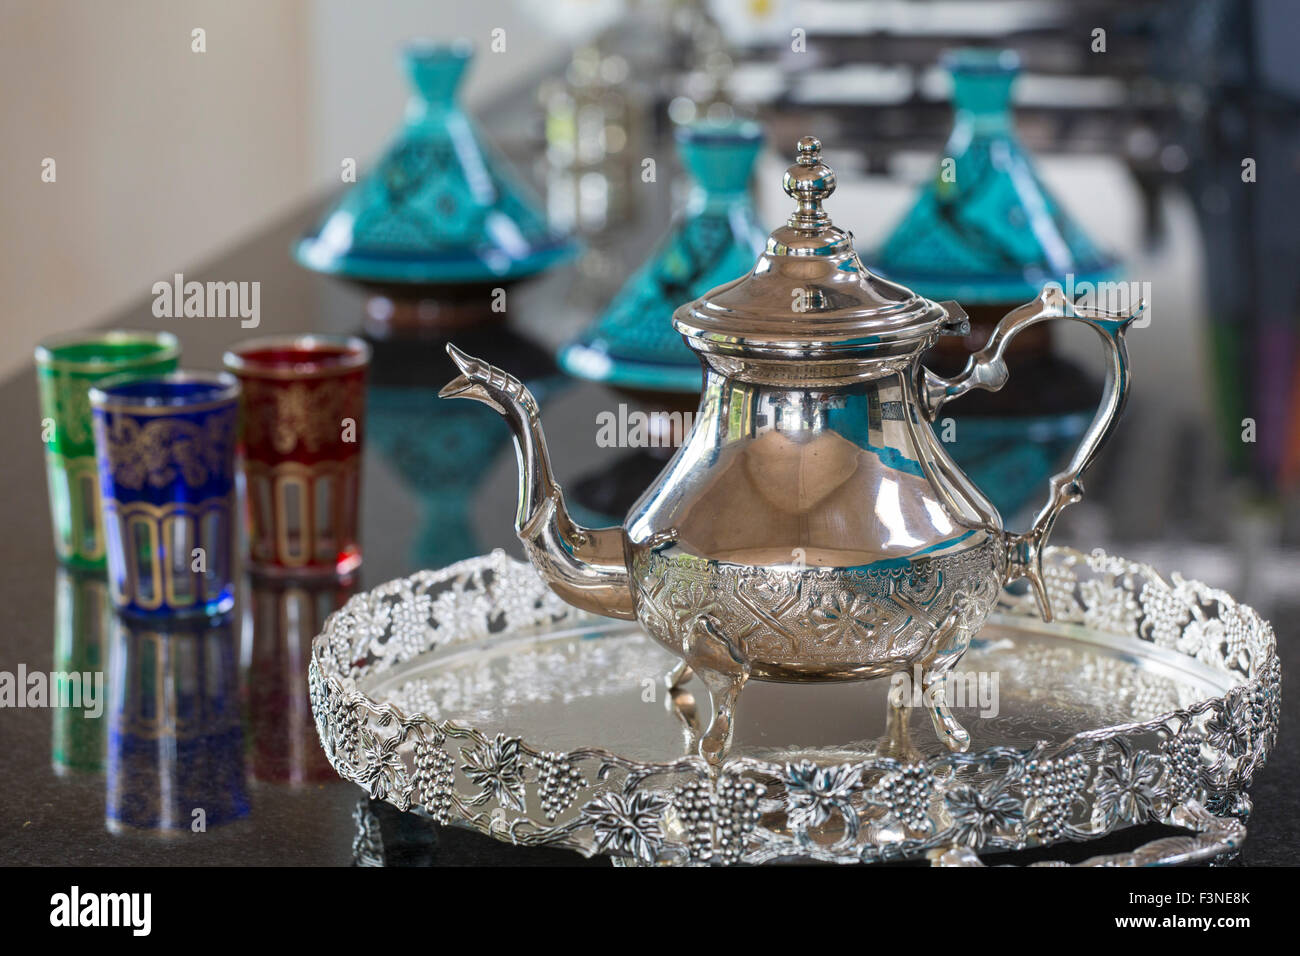 Teiera marocchino con gli occhiali e gli ingredienti di base di una tagine in background Foto Stock